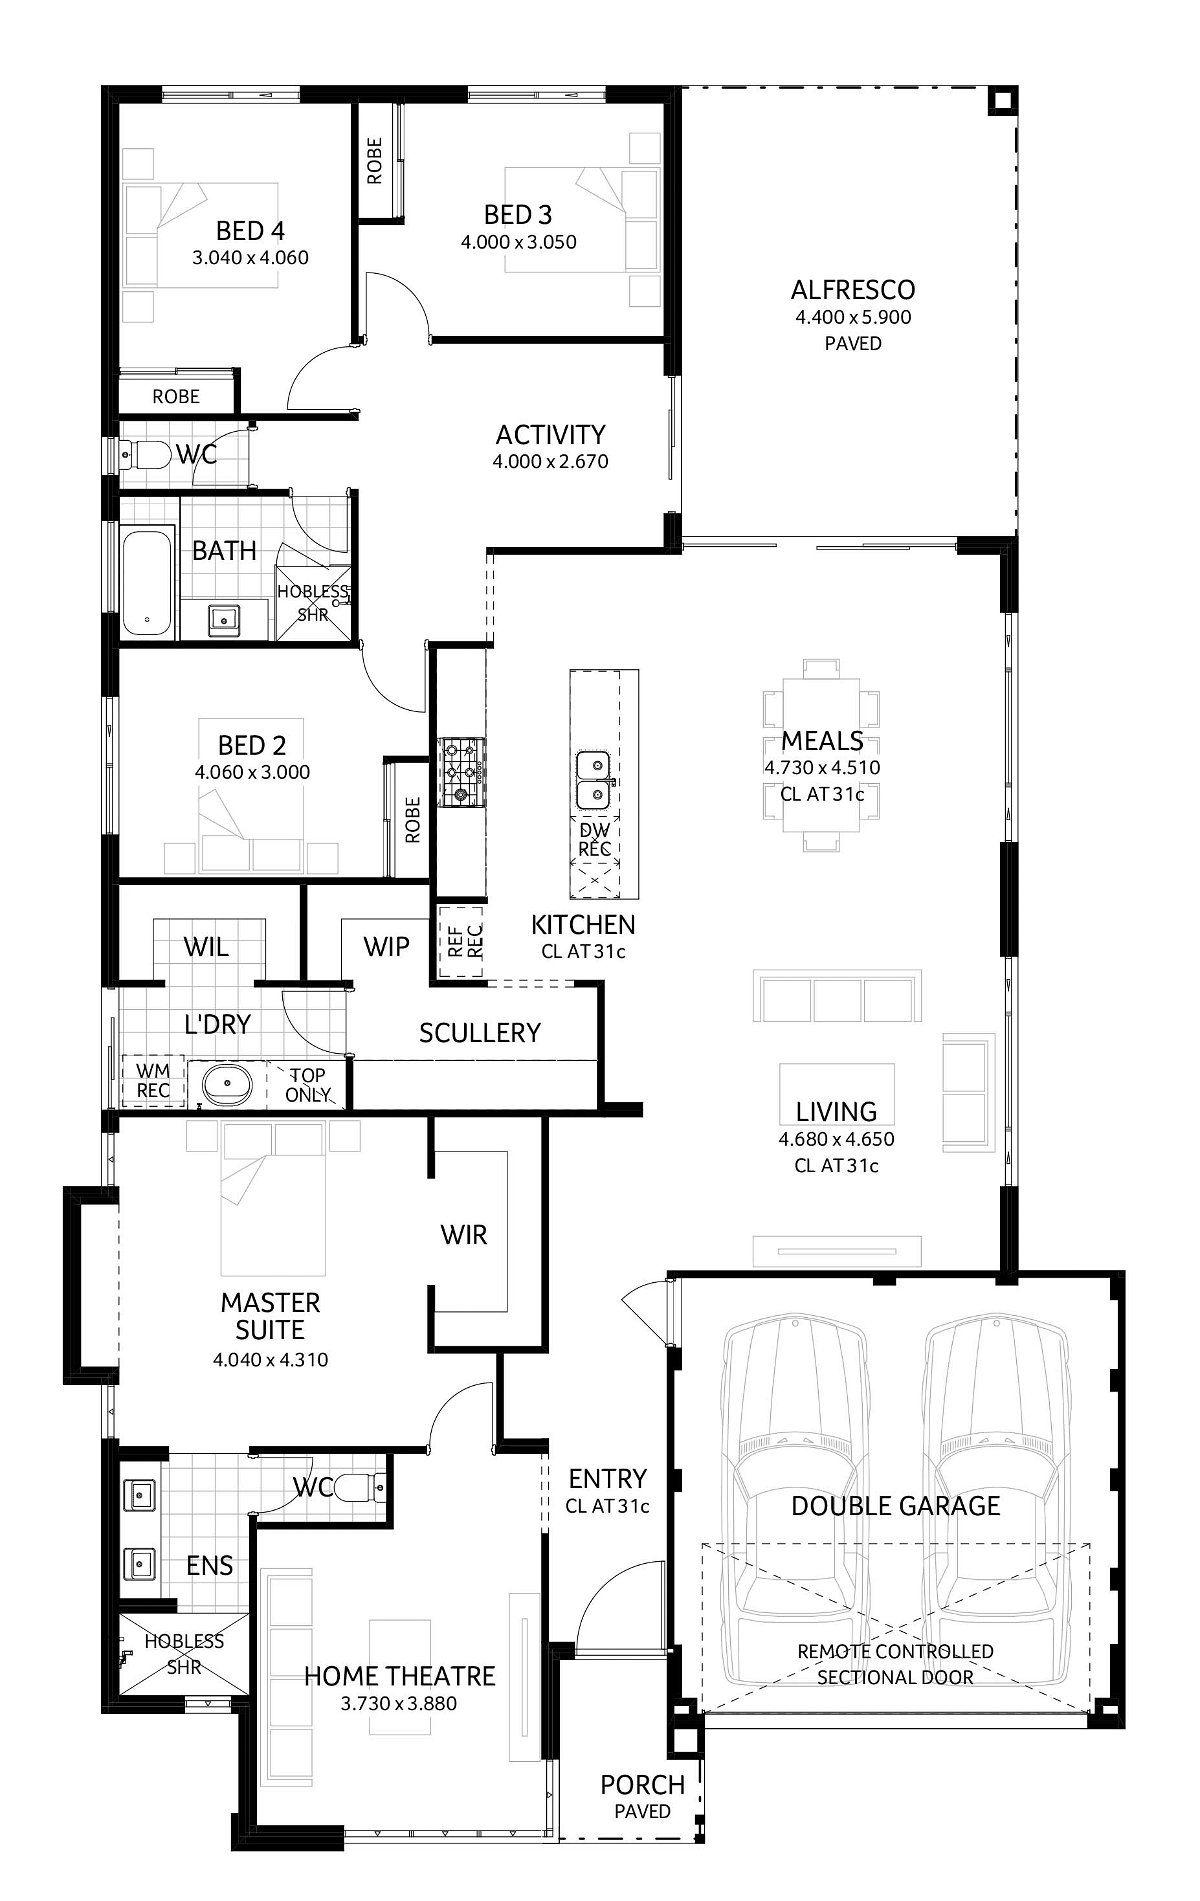 Plunkett Homes - Santana | Mid-Century - Floorplan - Santana Luxe Mid Century Marketing Plan Croppedjpg